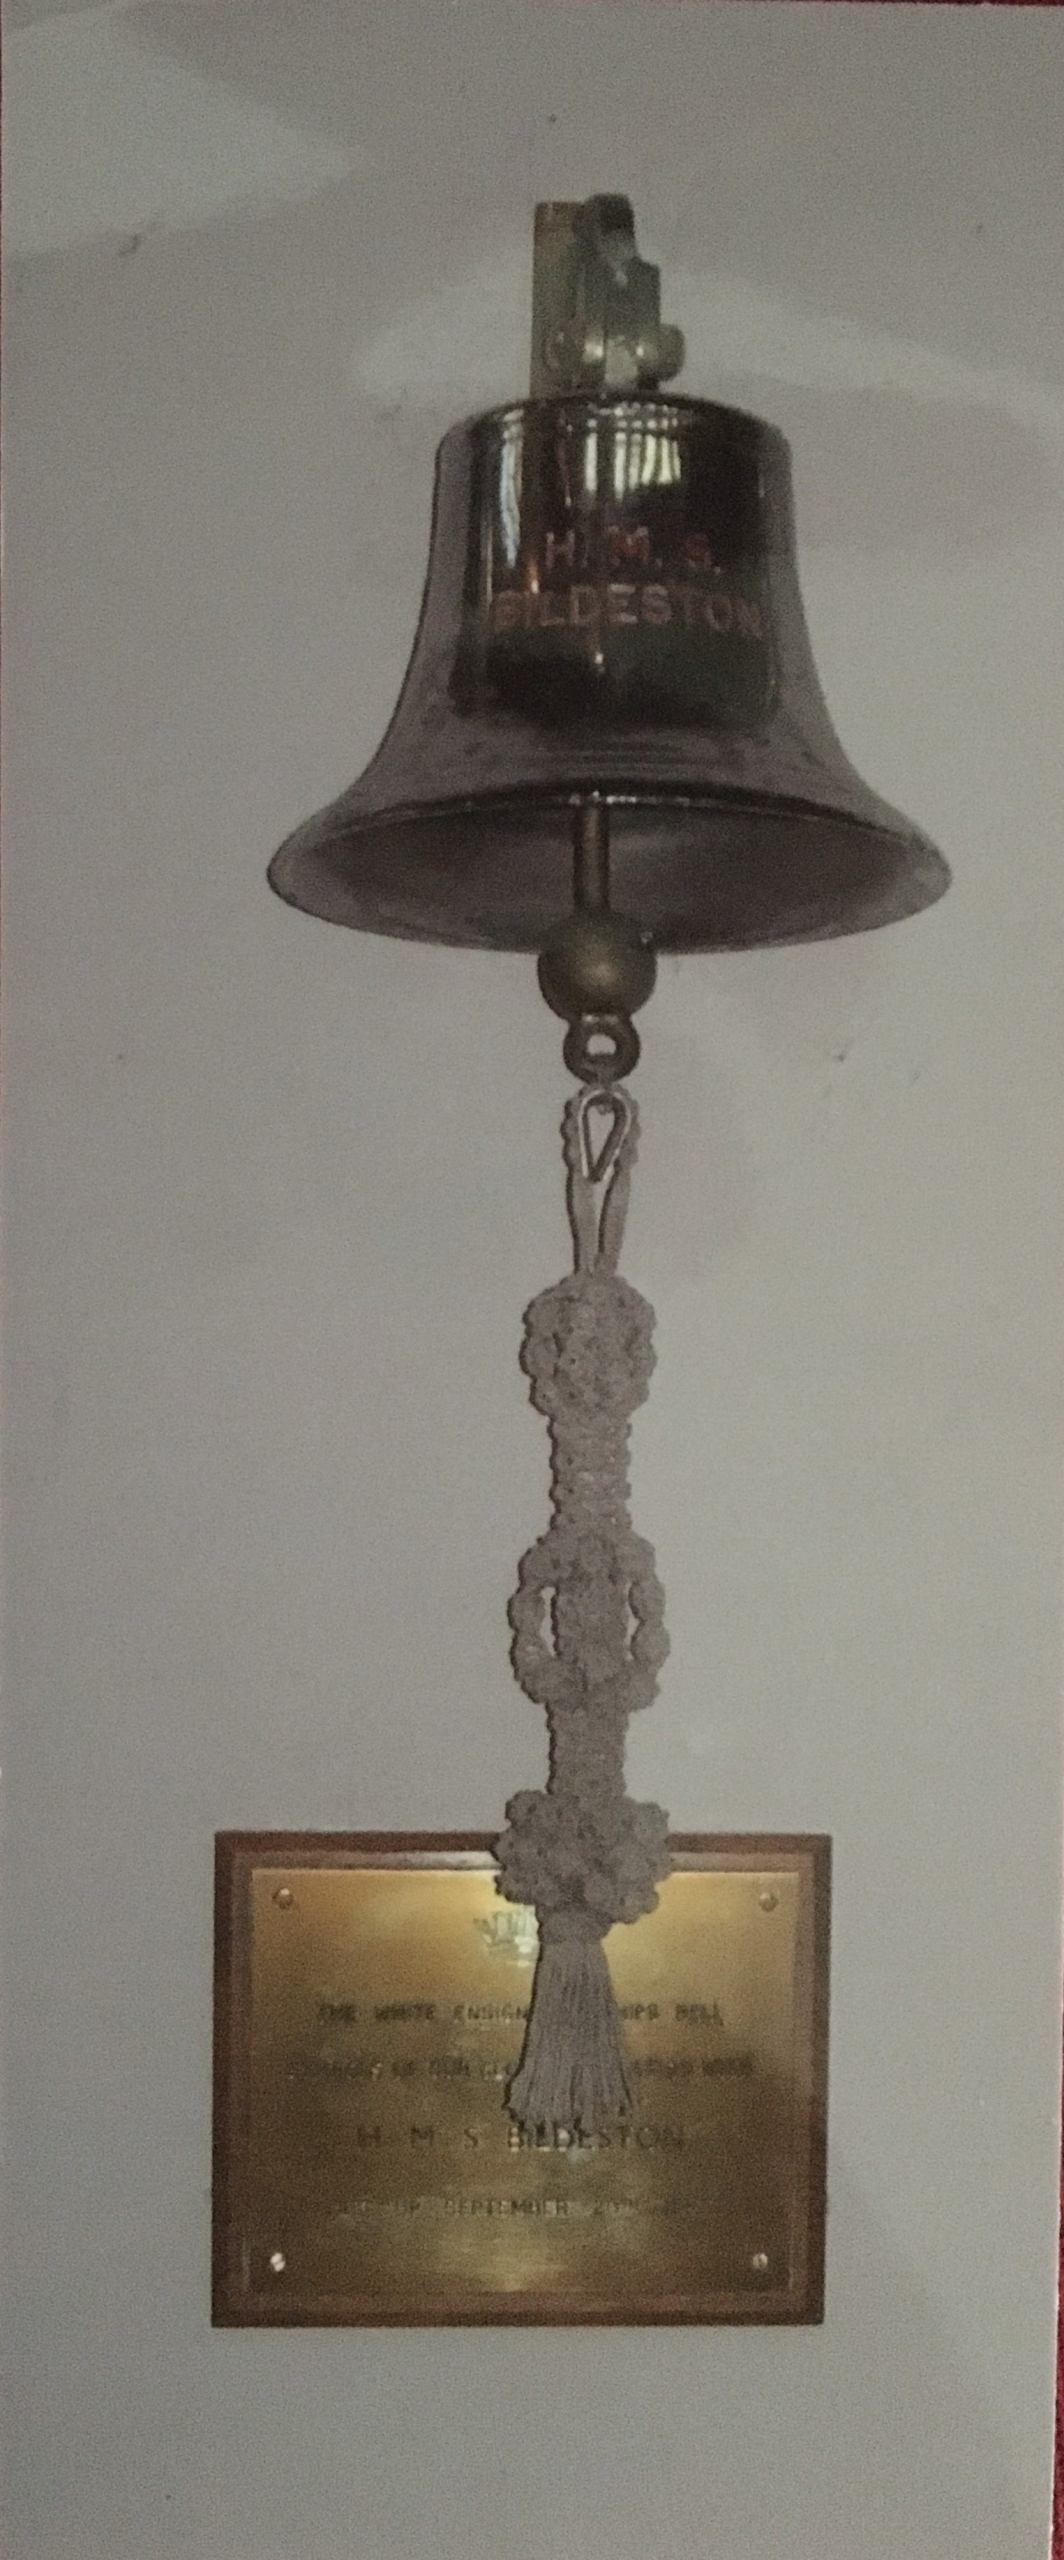 HMS Bildeston's bell